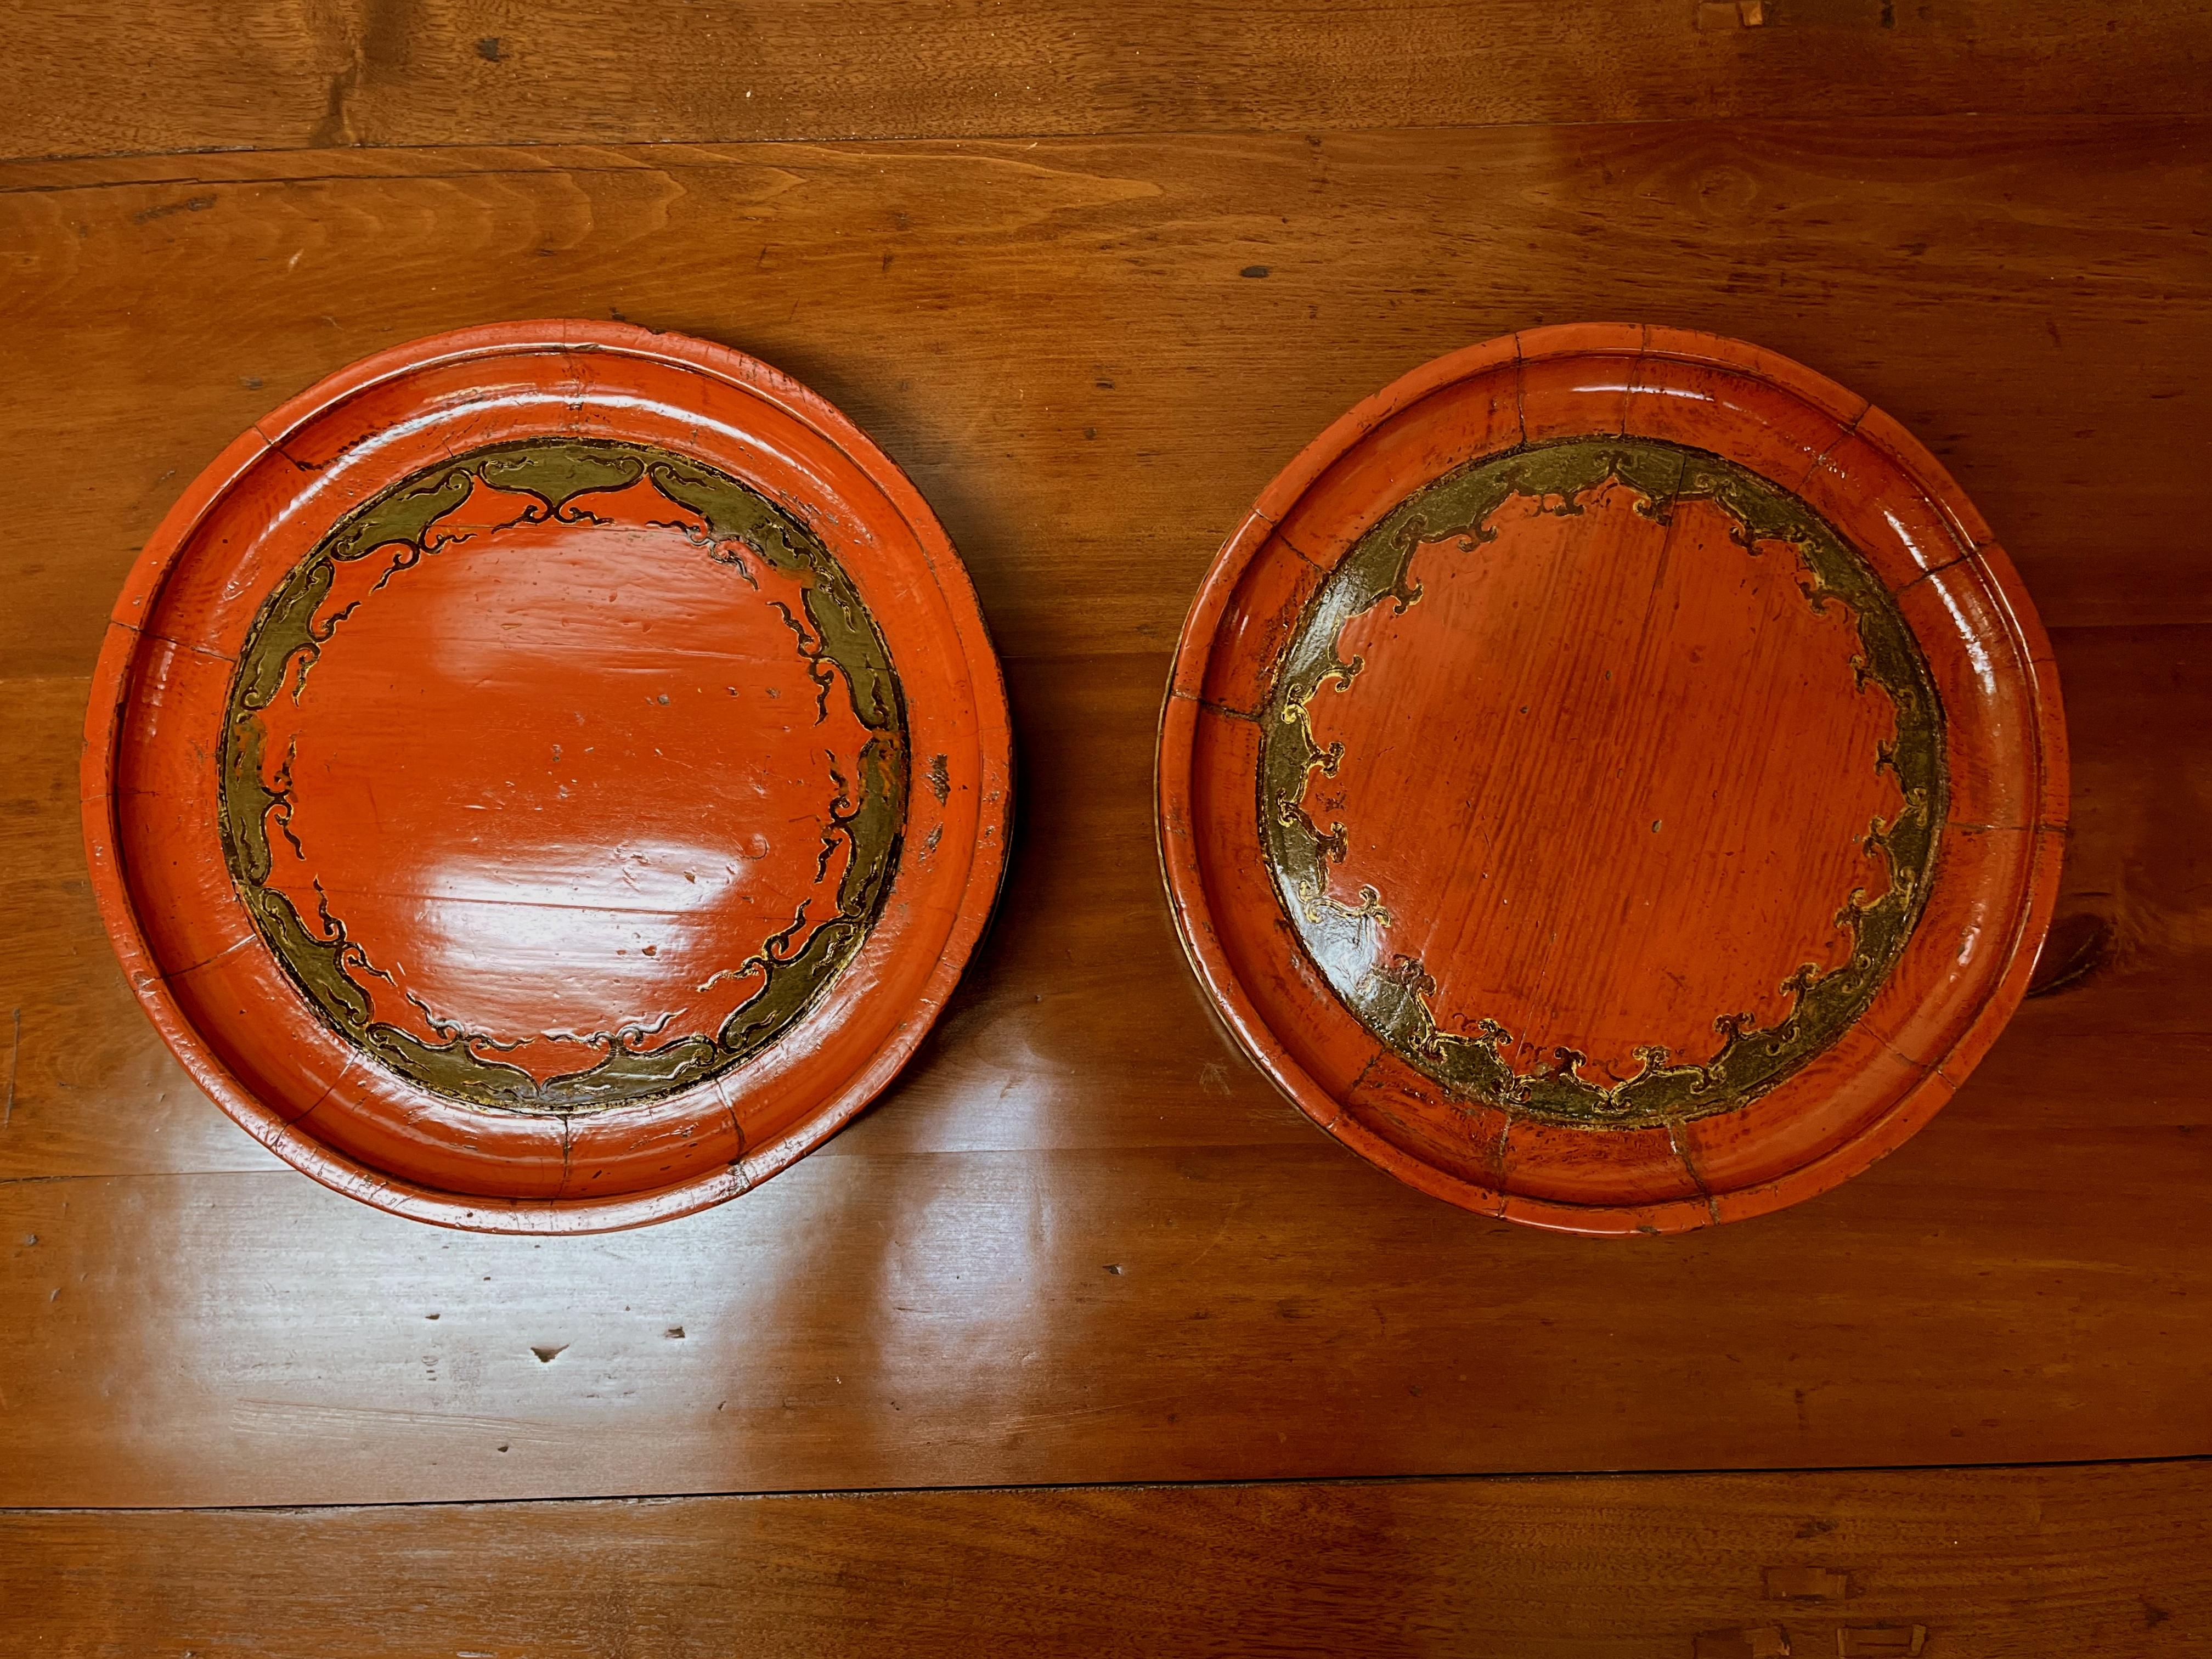 Deux assiettes rondes de mariage en bois laqué rouge asiatique avec motif peint pour le dessert de mariage.
Il ne s'agit pas d'une paire, mais de tailles très similaires.
Vente de deux assiettes ensemble pour le prix